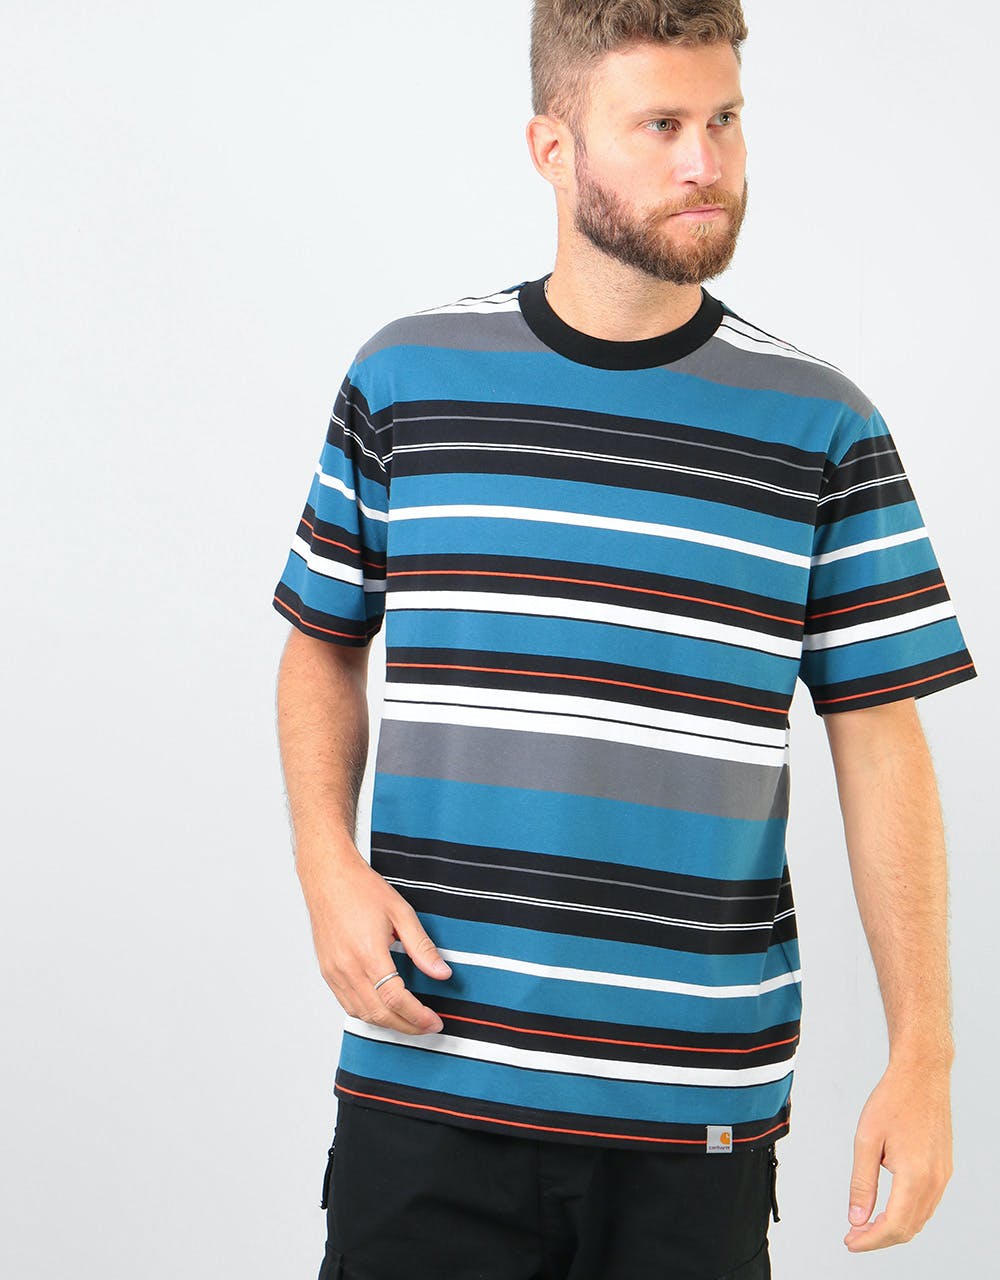 Carhartt WIP S/S Flint T-Shirt - Flint Stripe/Prussian Blue